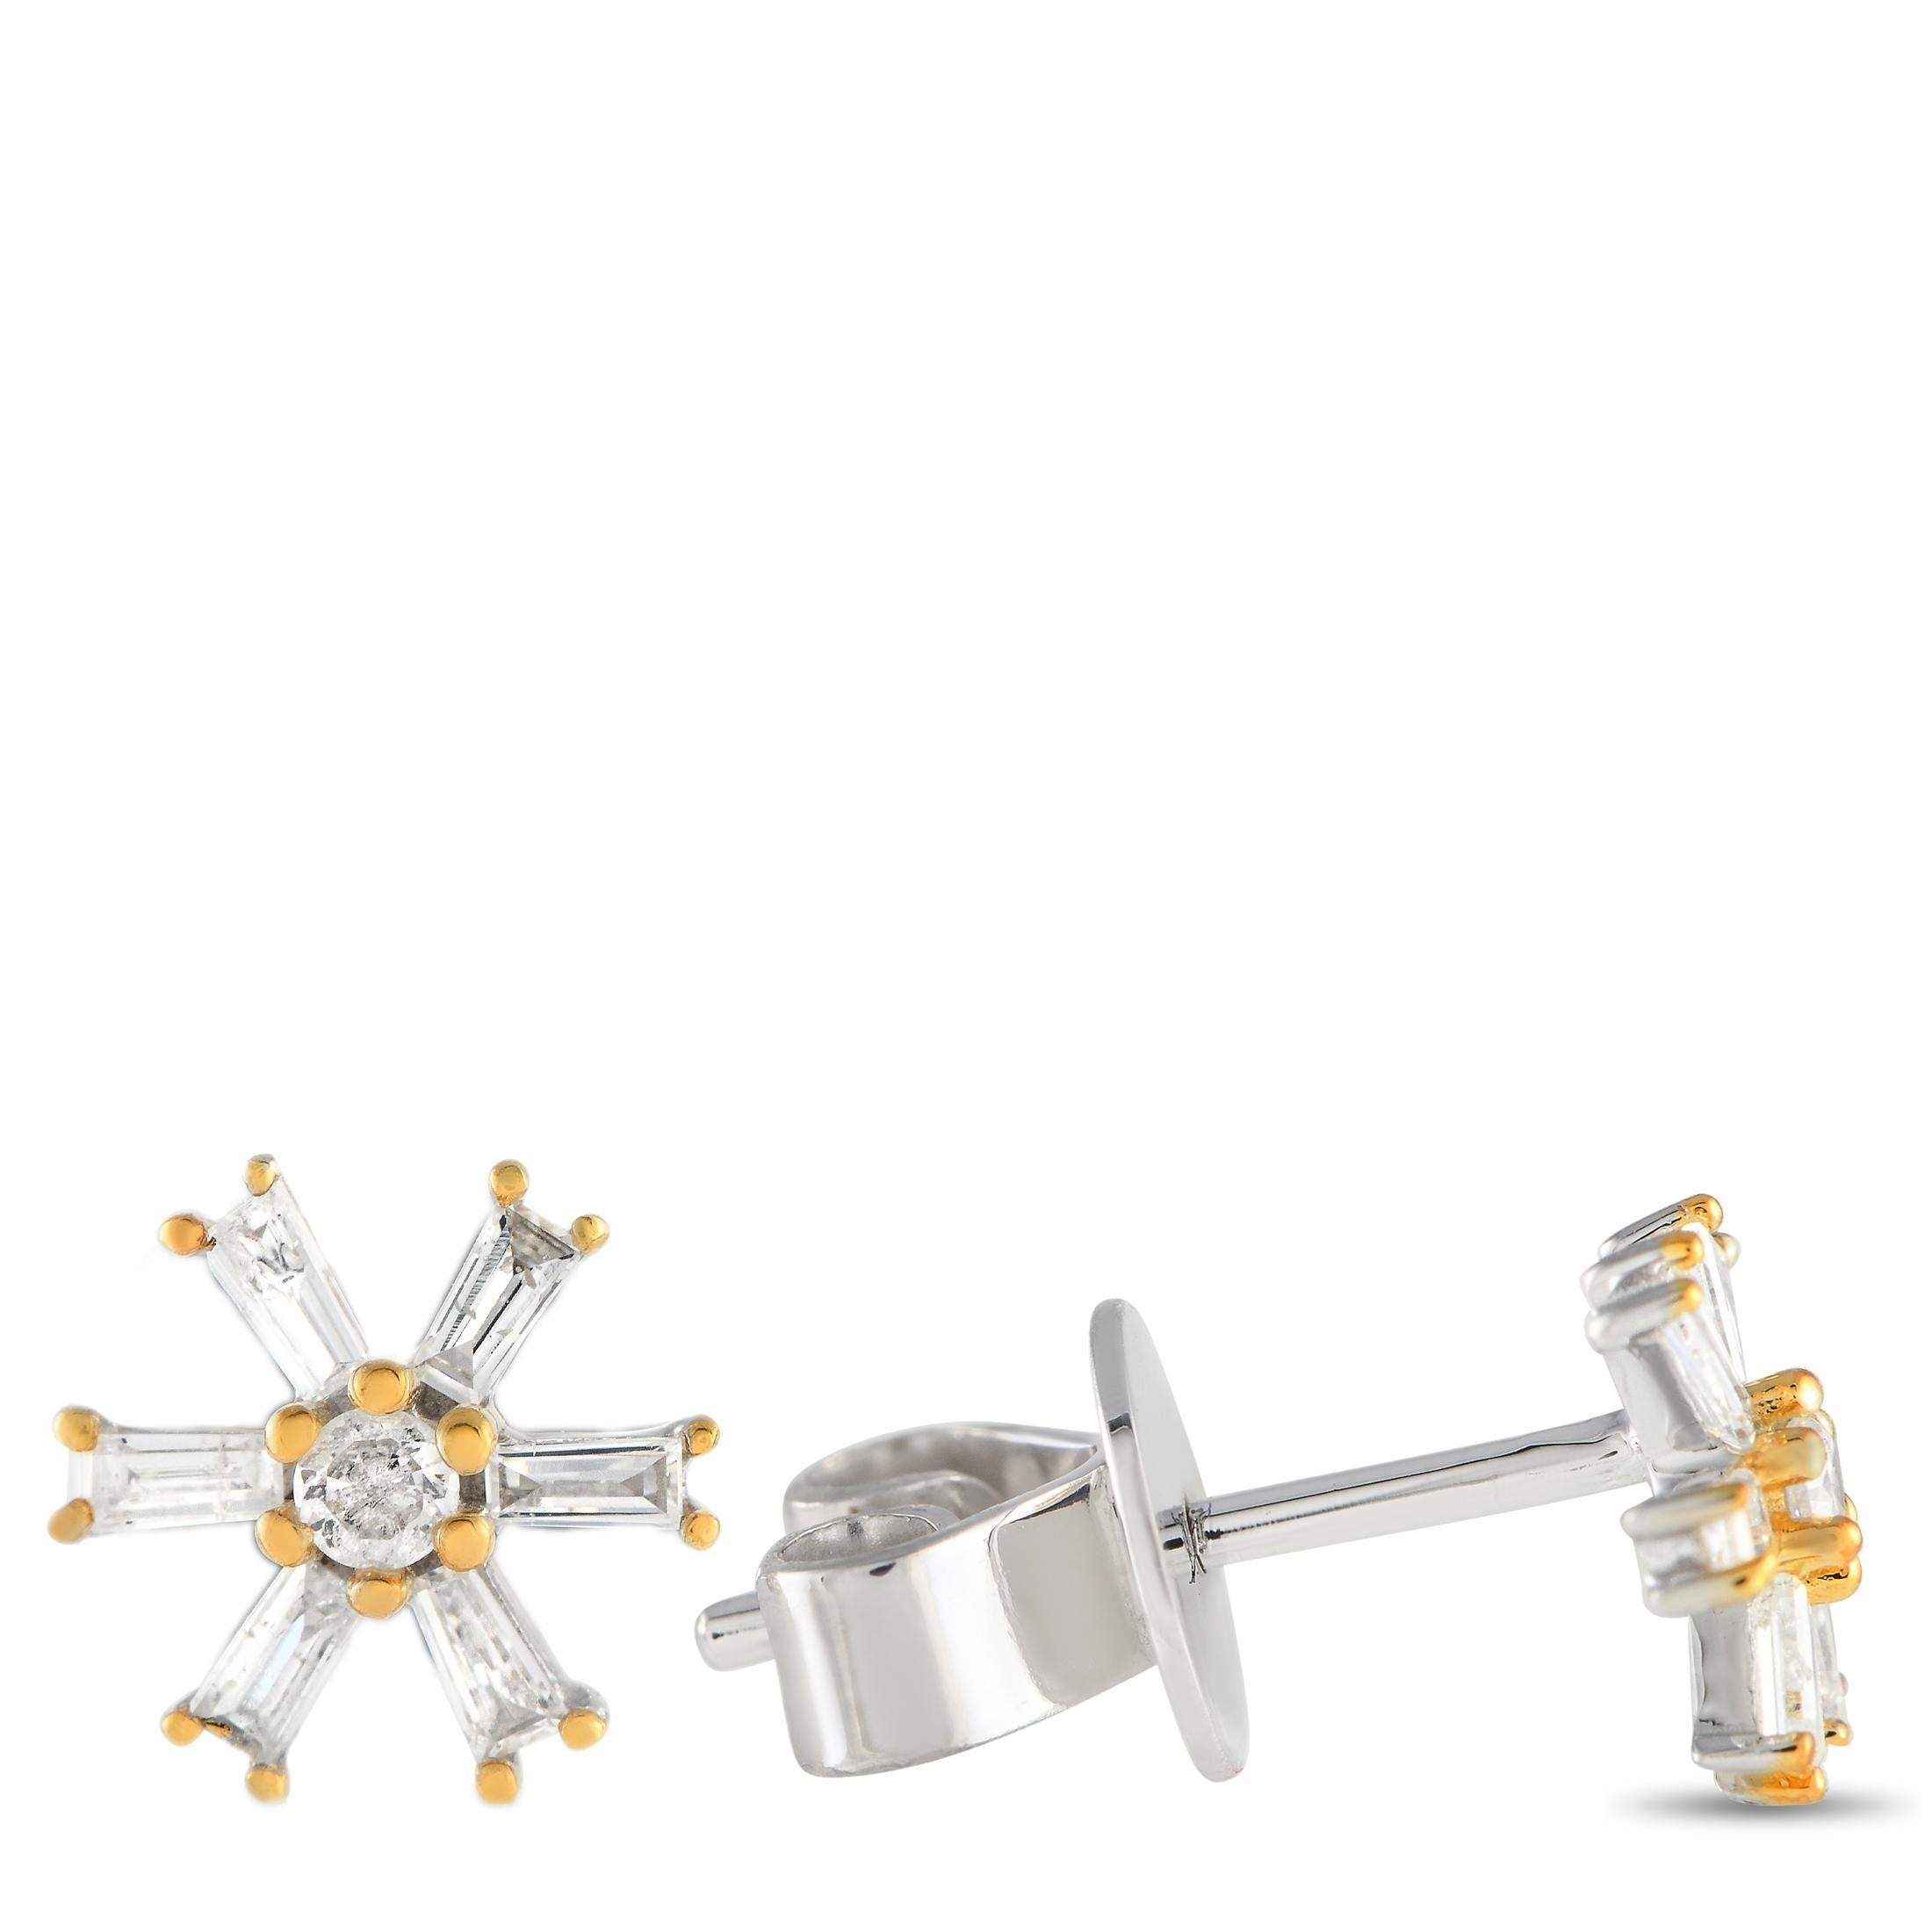 Peppen Sie den Charme eines verträumten Outfits mit diesem Paar diamantener Ohrringe in Form von Windrädern auf. Diese Ohrstecker aus 14-karätigem Weißgold haben einen runden Diamanten in der Mitte, der von sechs Zacken aus 14-karätigem Gelbgold